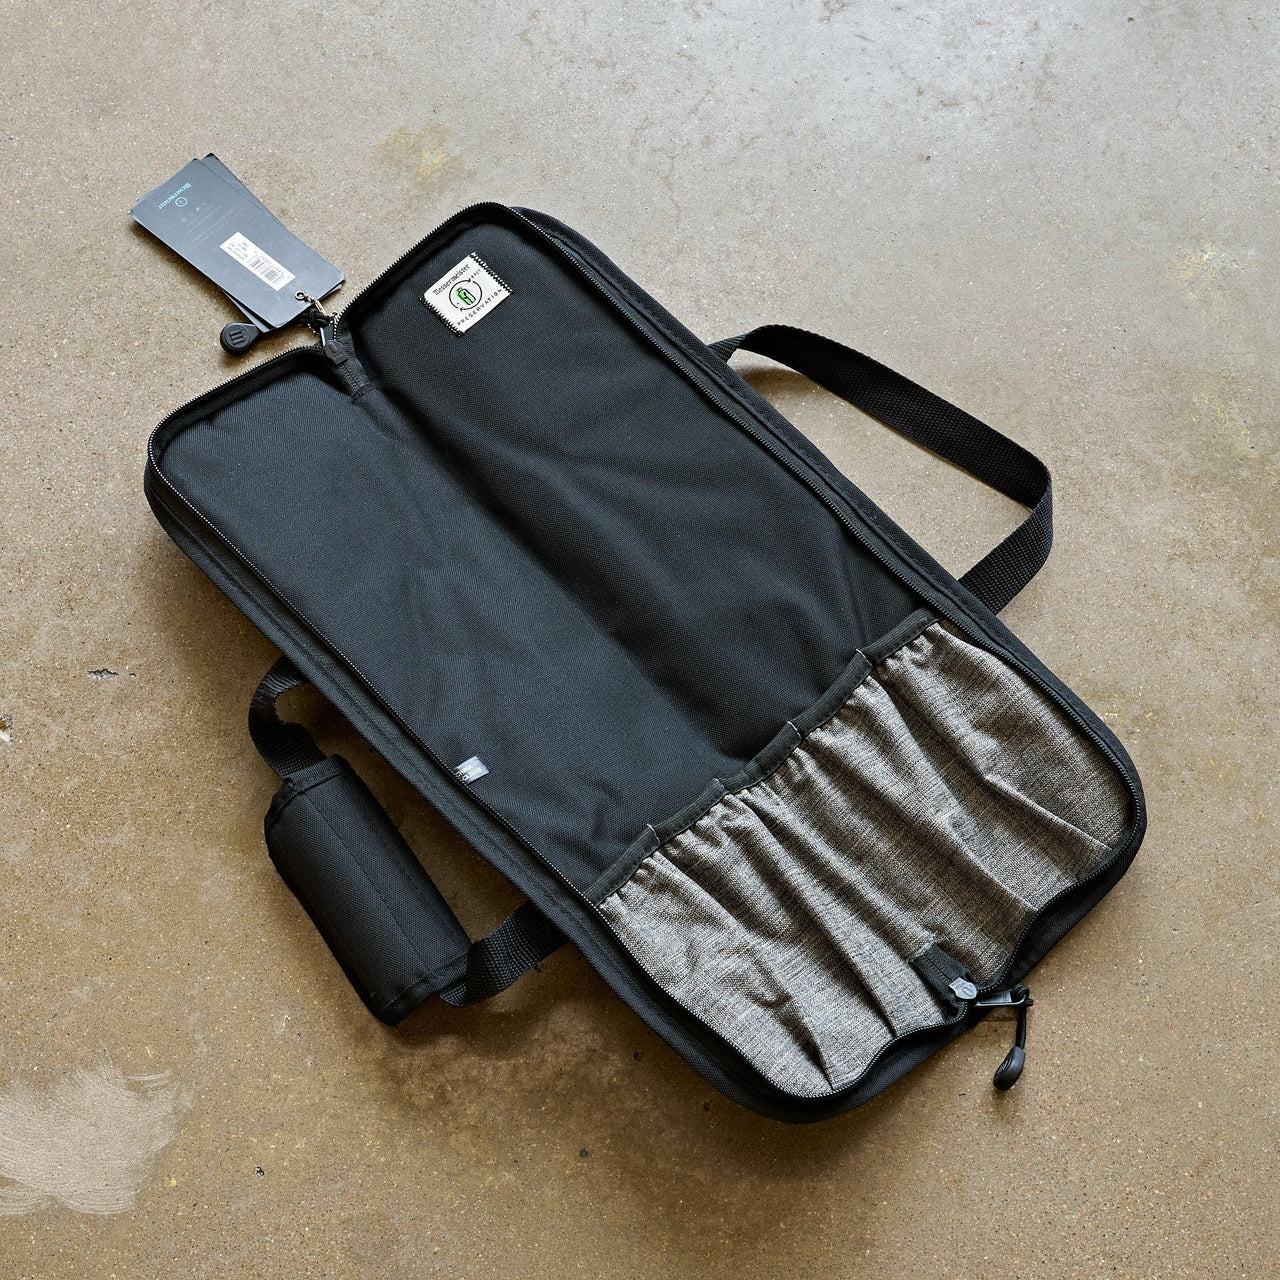 Messermeister 5 POCKET Black Preservation Knife Roll Black-Accessories-Messermeister-Carbon Knife Co